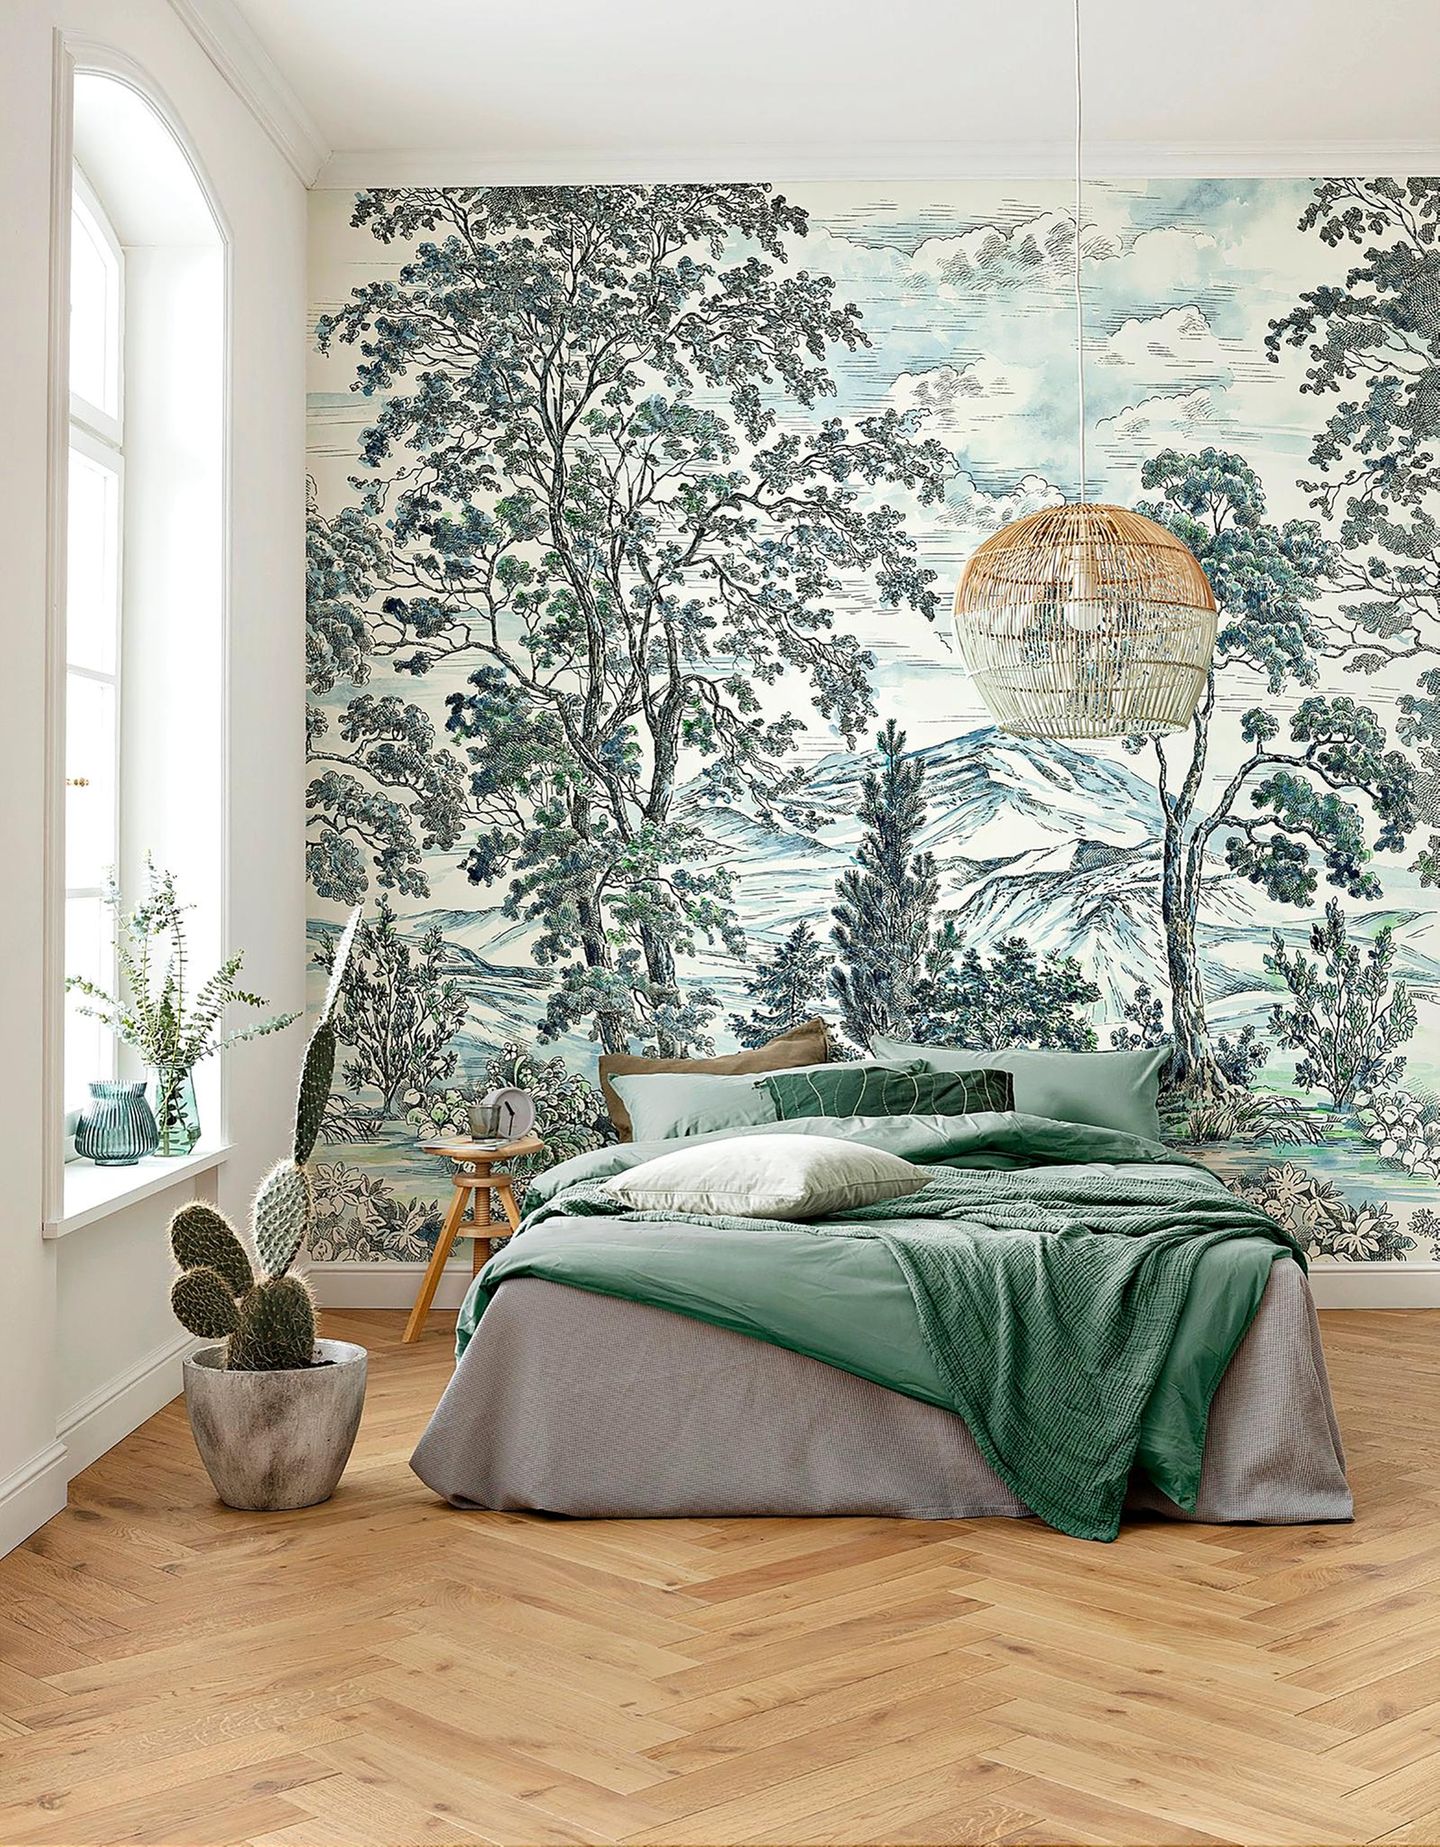 Schlafzimmer in Grüntönen dekoriert mit Bambusleuchte und einer Digitaldrucktapete mit japanischem Landmotiv